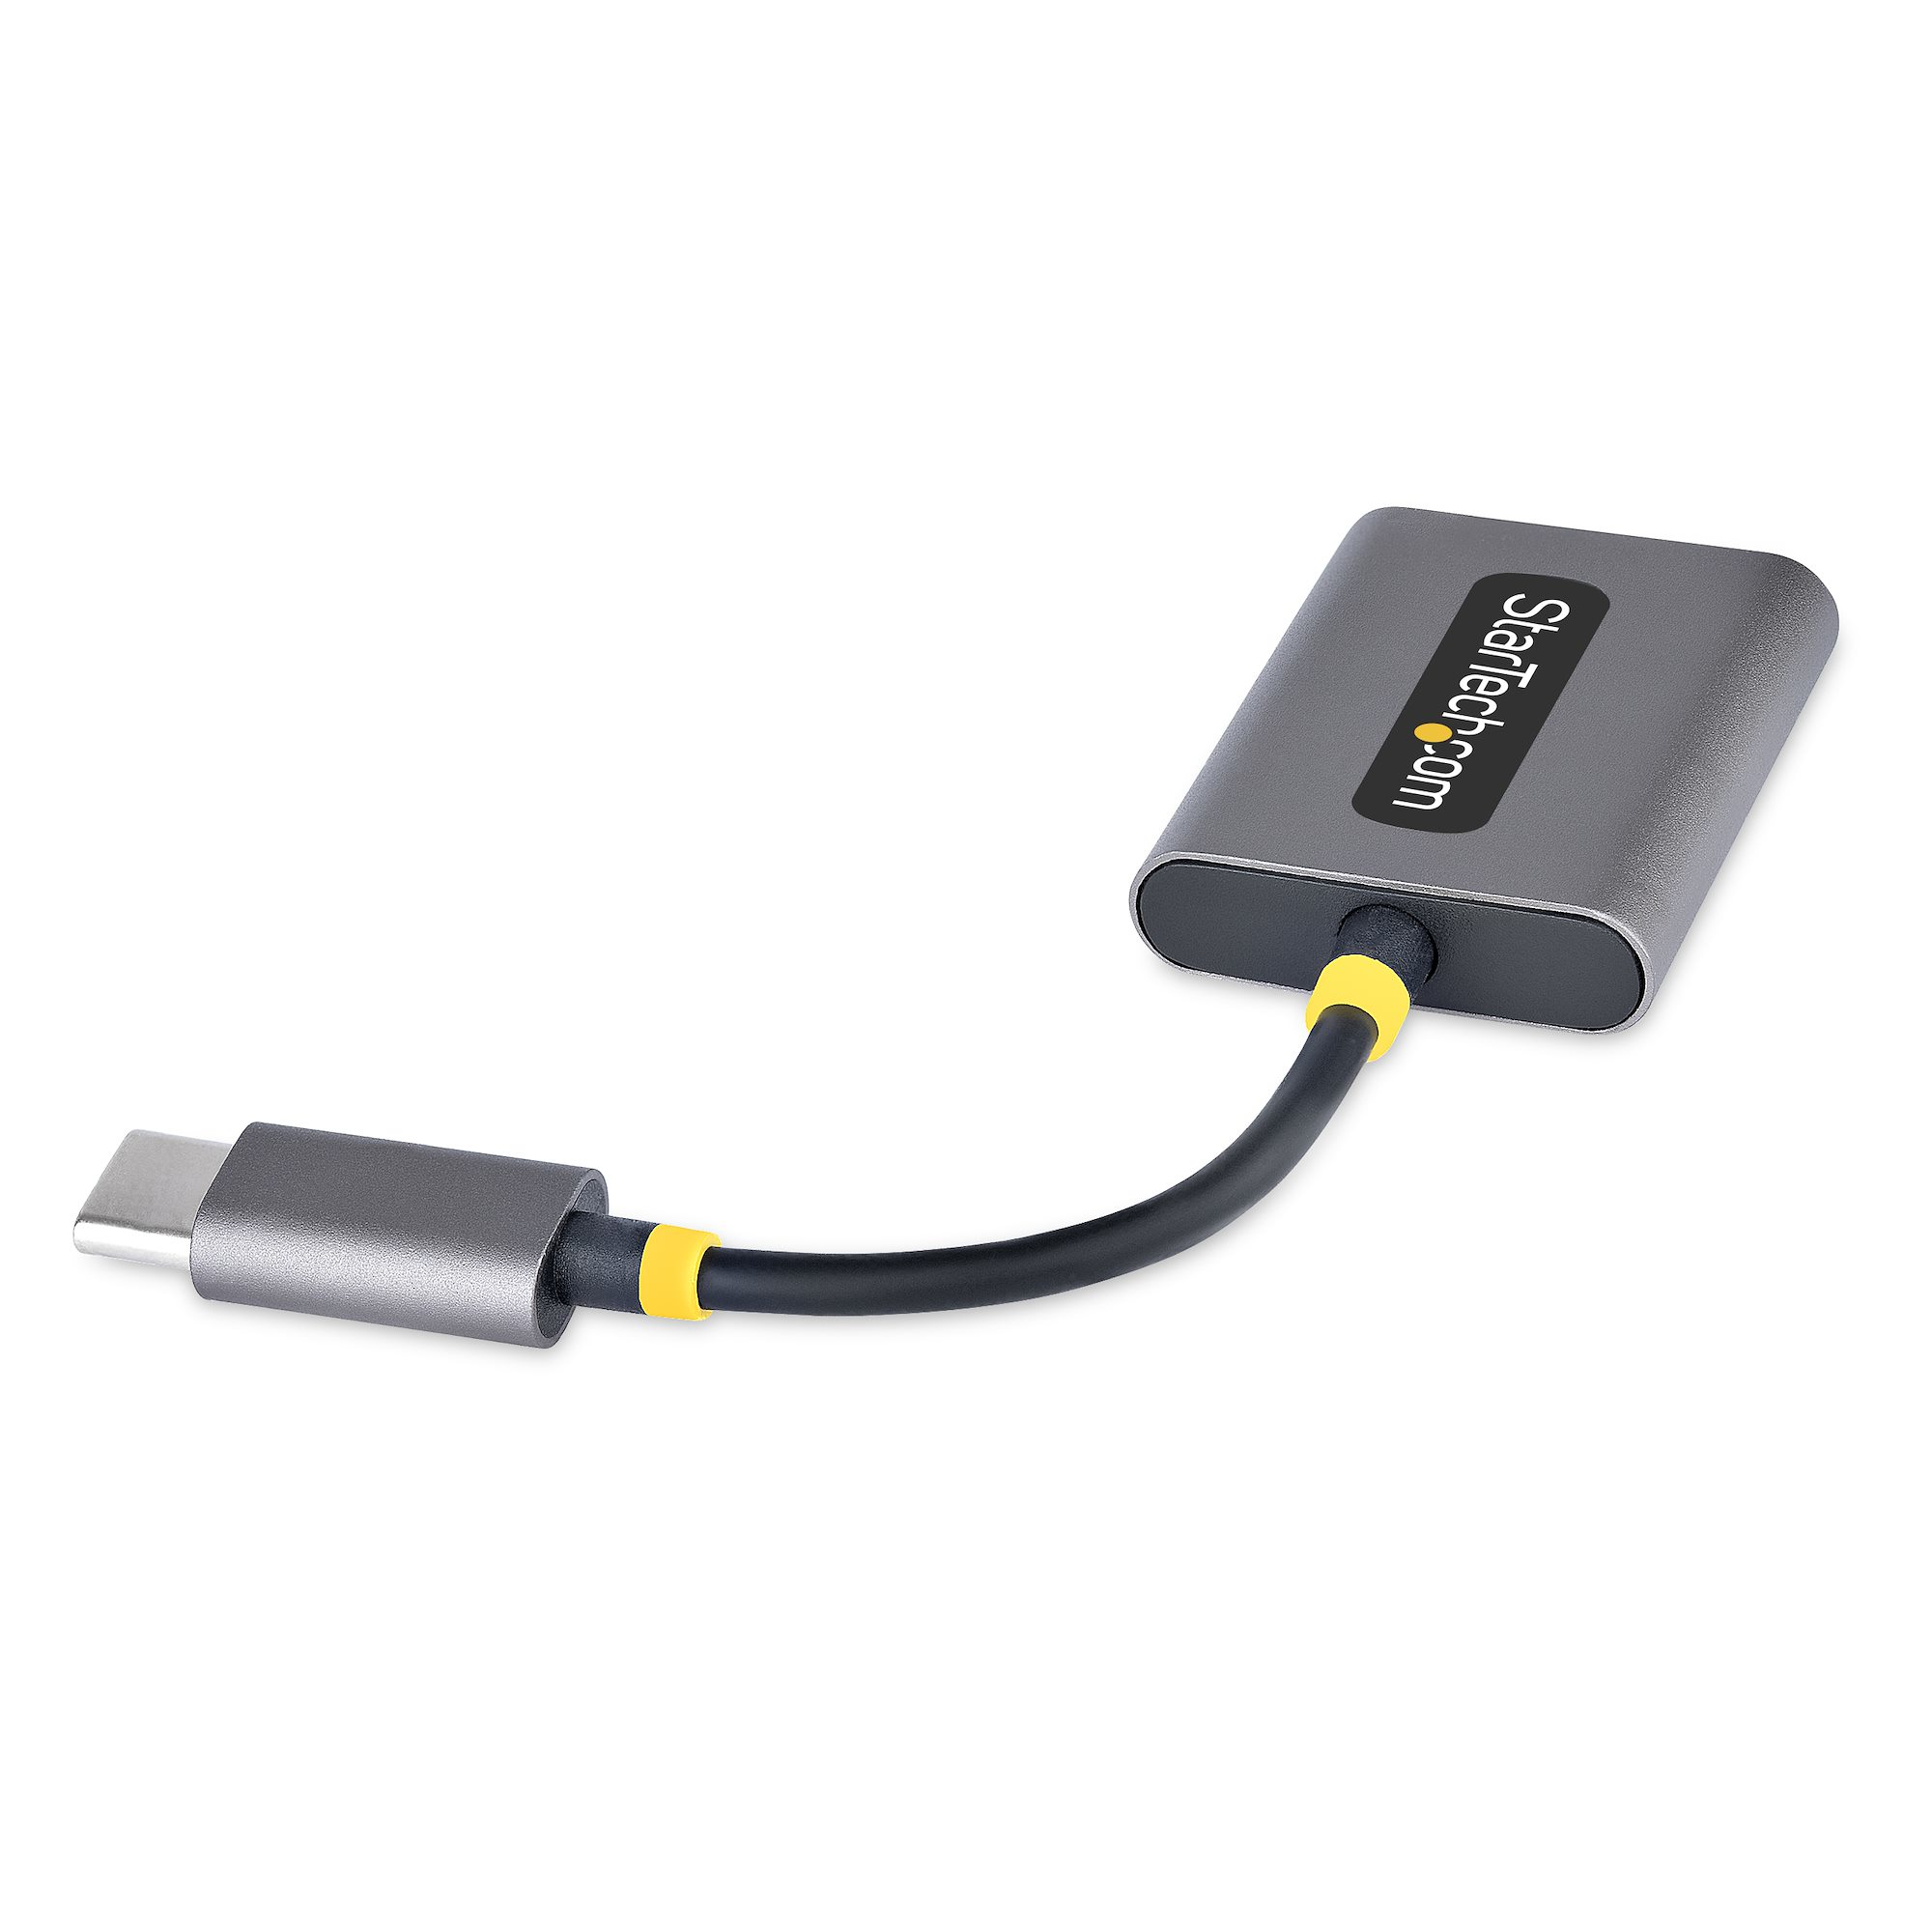 StarTech.com Adaptateur Casque USB-C - Splitter Audio, Double Casque USB  Type C avec Entrée Micro - Adaptateur USB C vers Jack 3.5mm, DAC 3.5 mm 